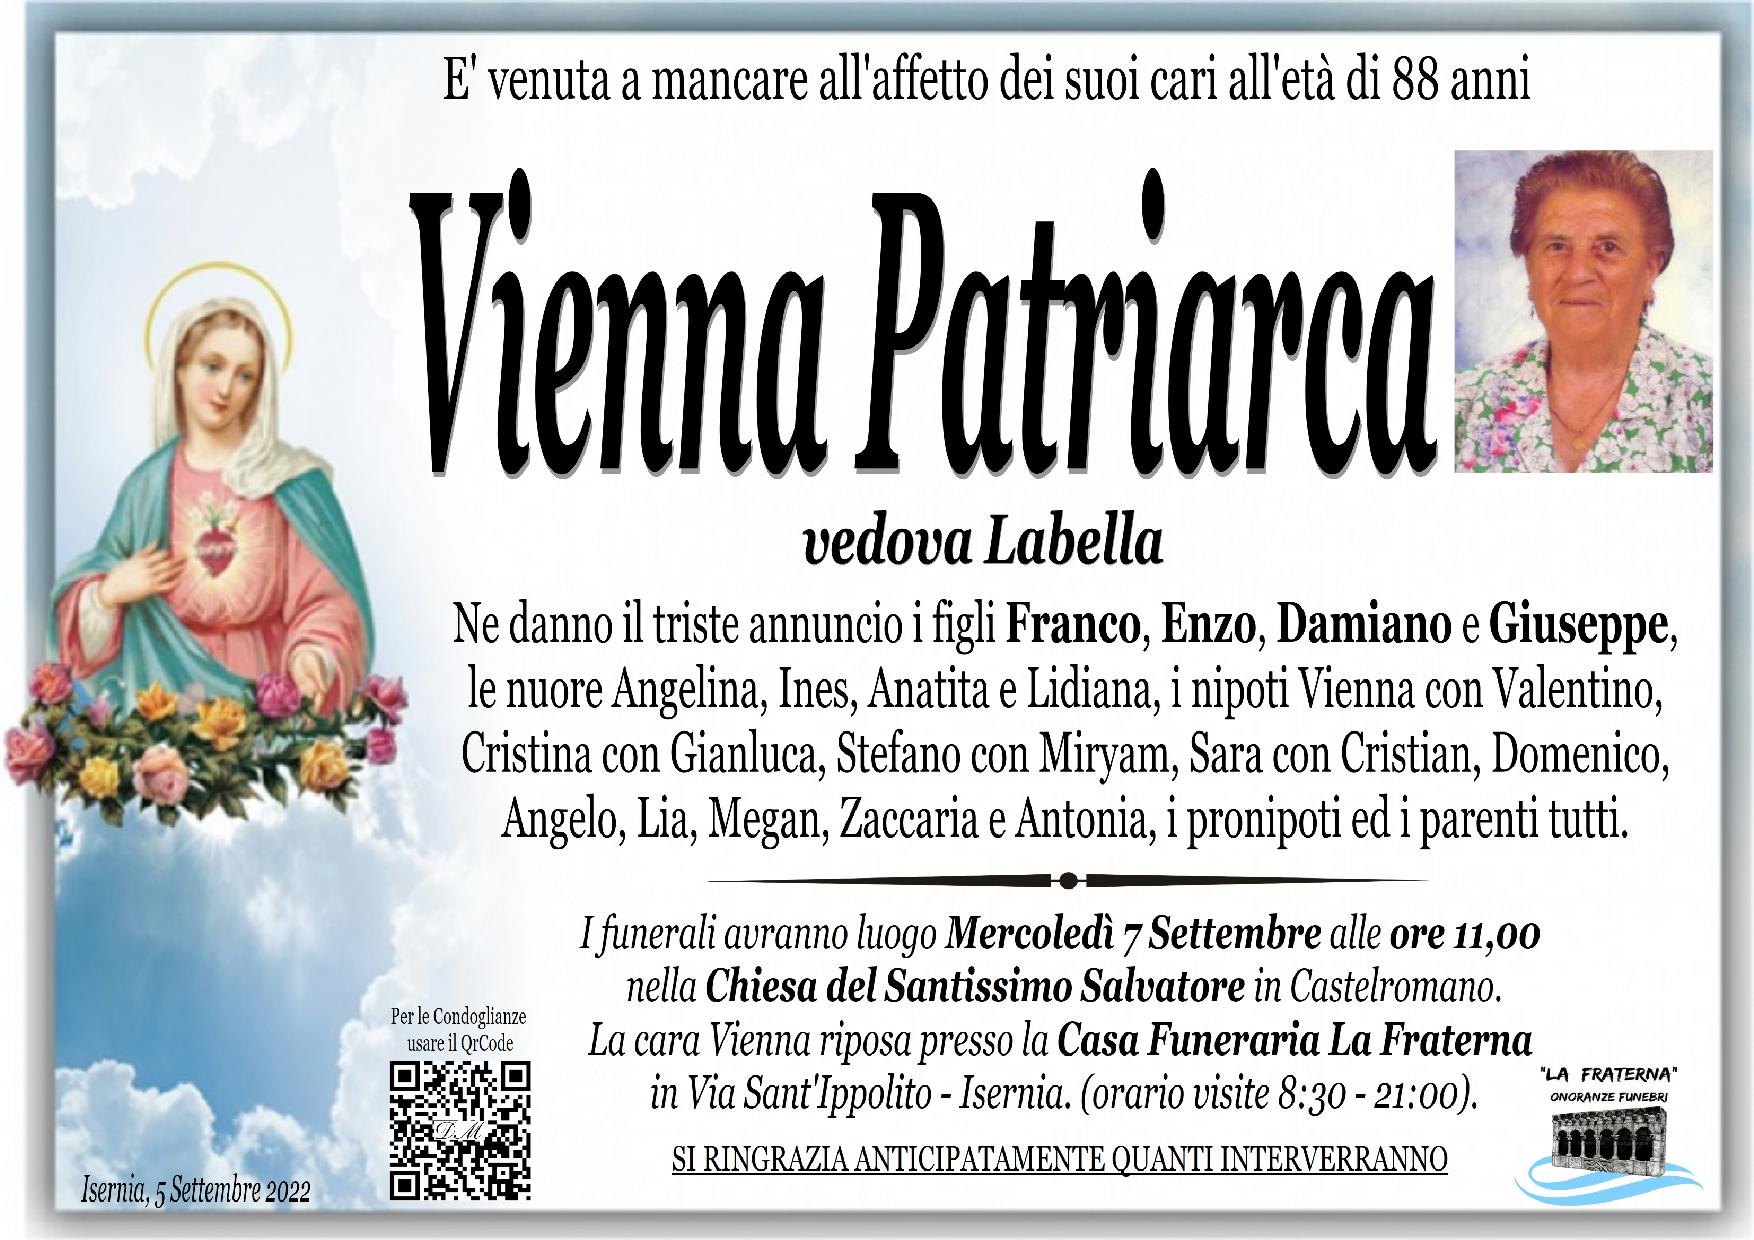 necrologio Vienna Patriarca